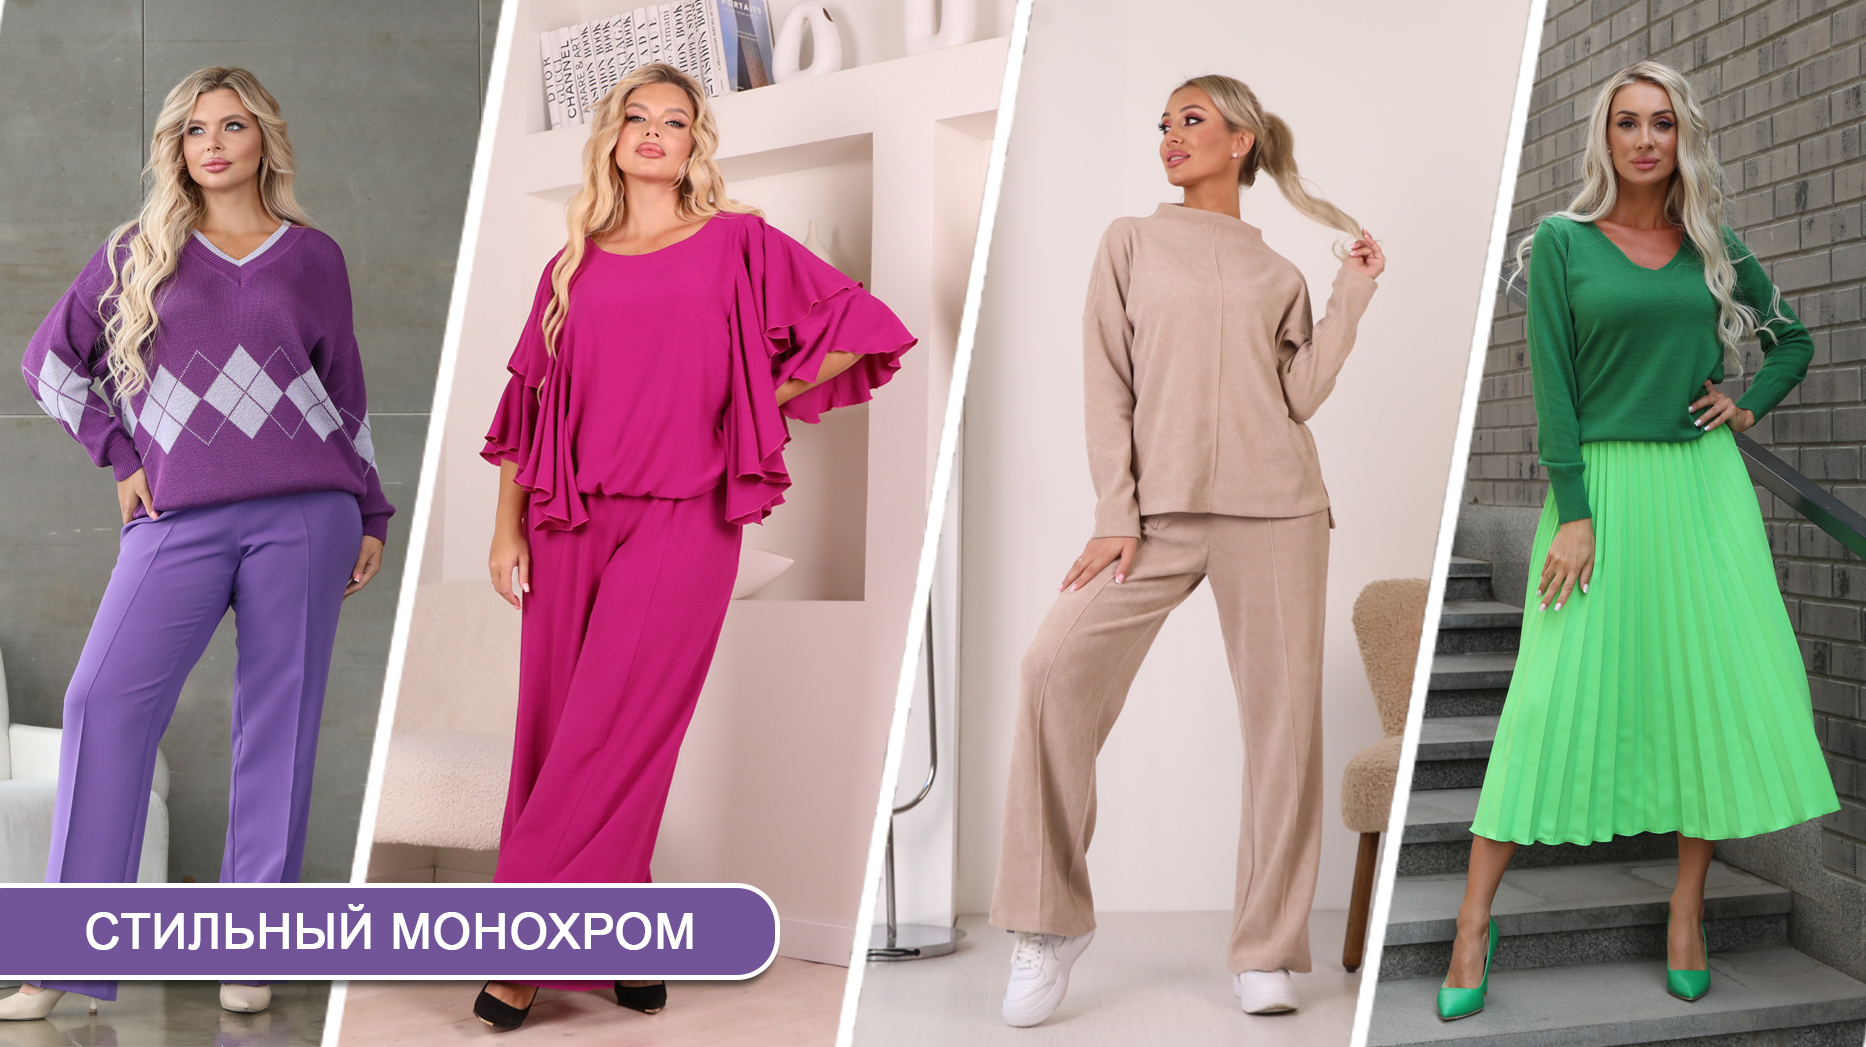 Дизайнерские платья в интернет магазине Veronika BOSS. Купить в Перми платья российских дизайнеров